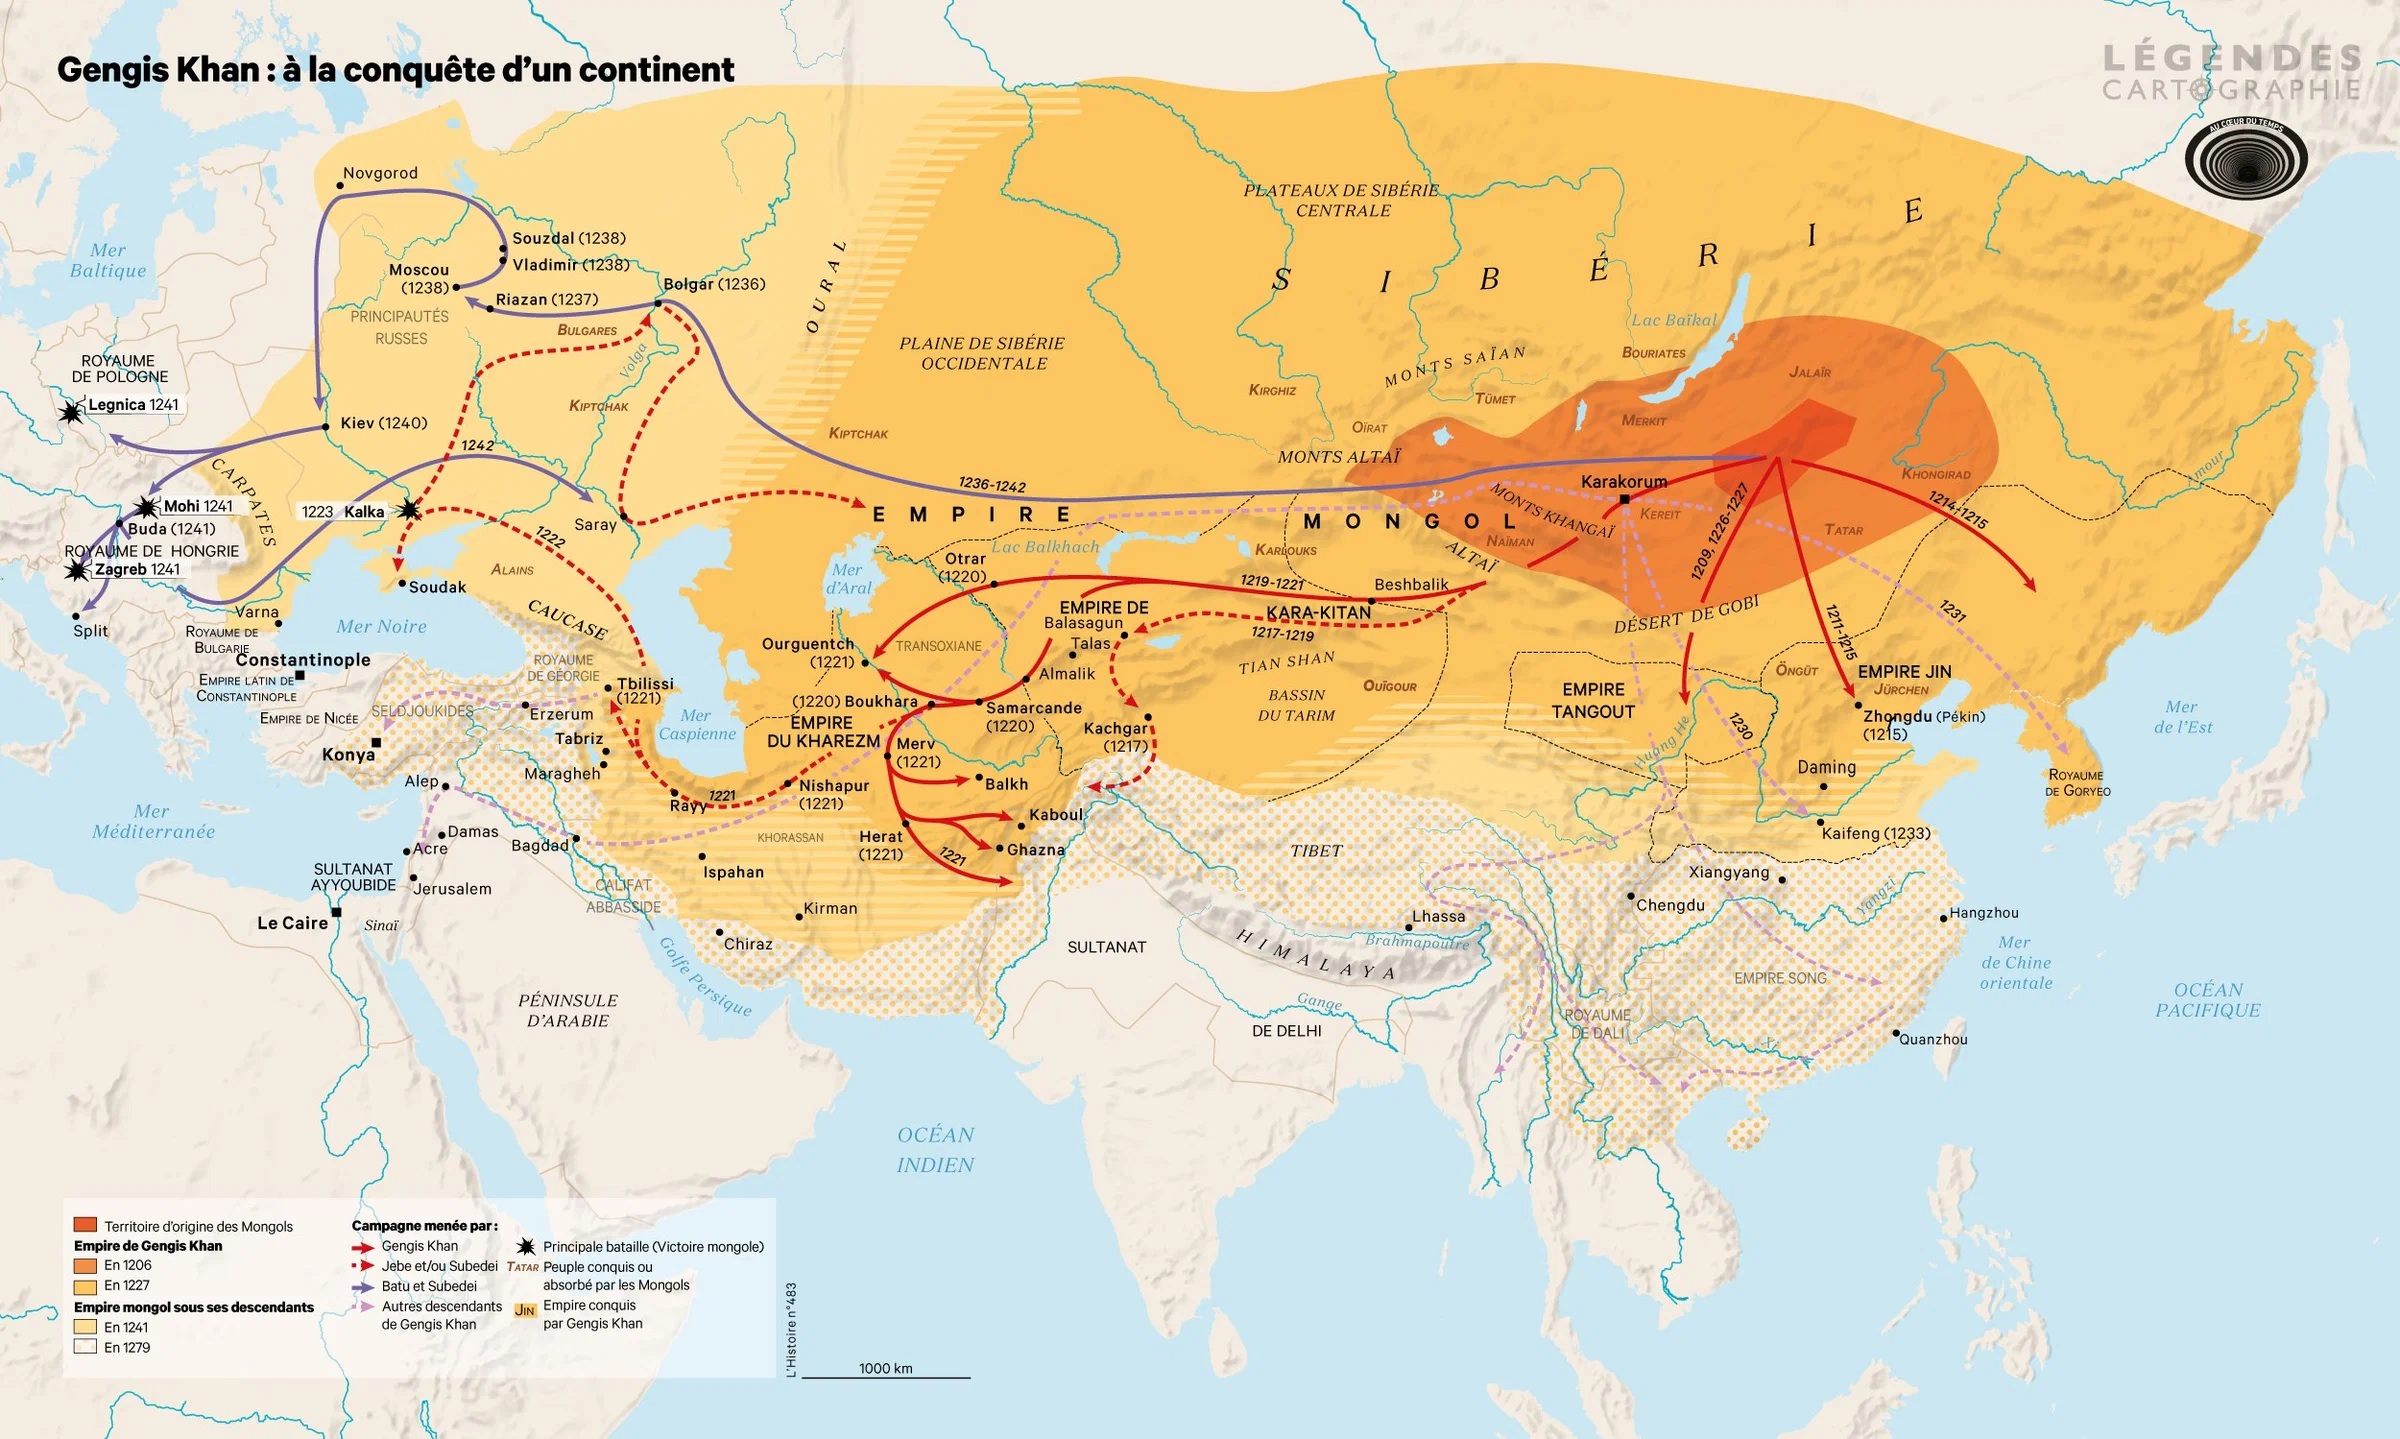 Папа нашел мир в монгольском империализме и оккупации